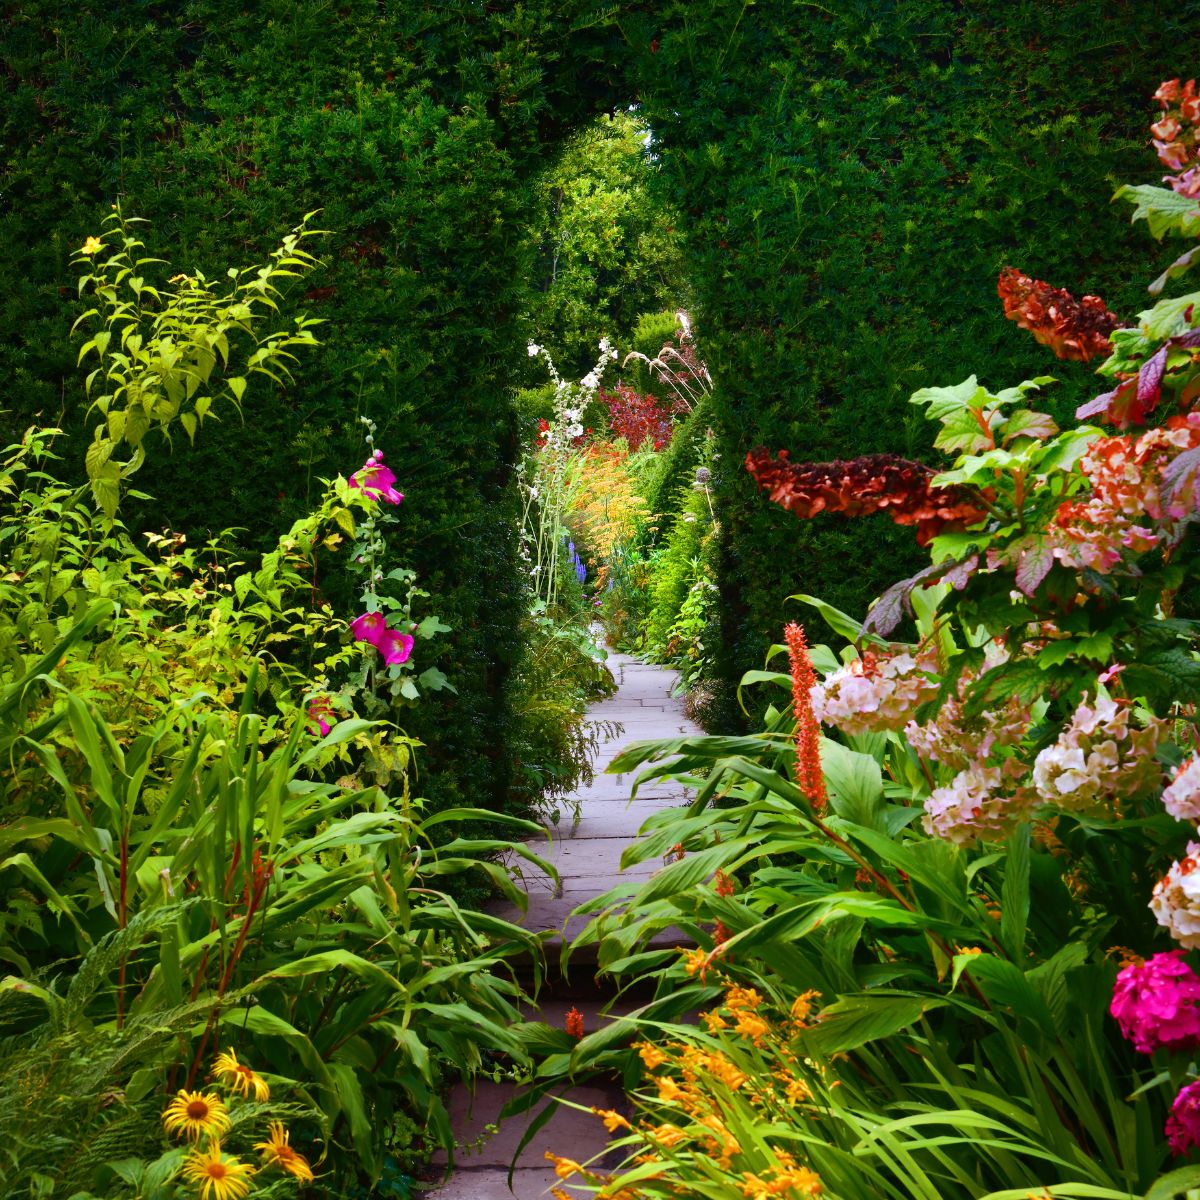 A narrow path through a beautiful secret garden.